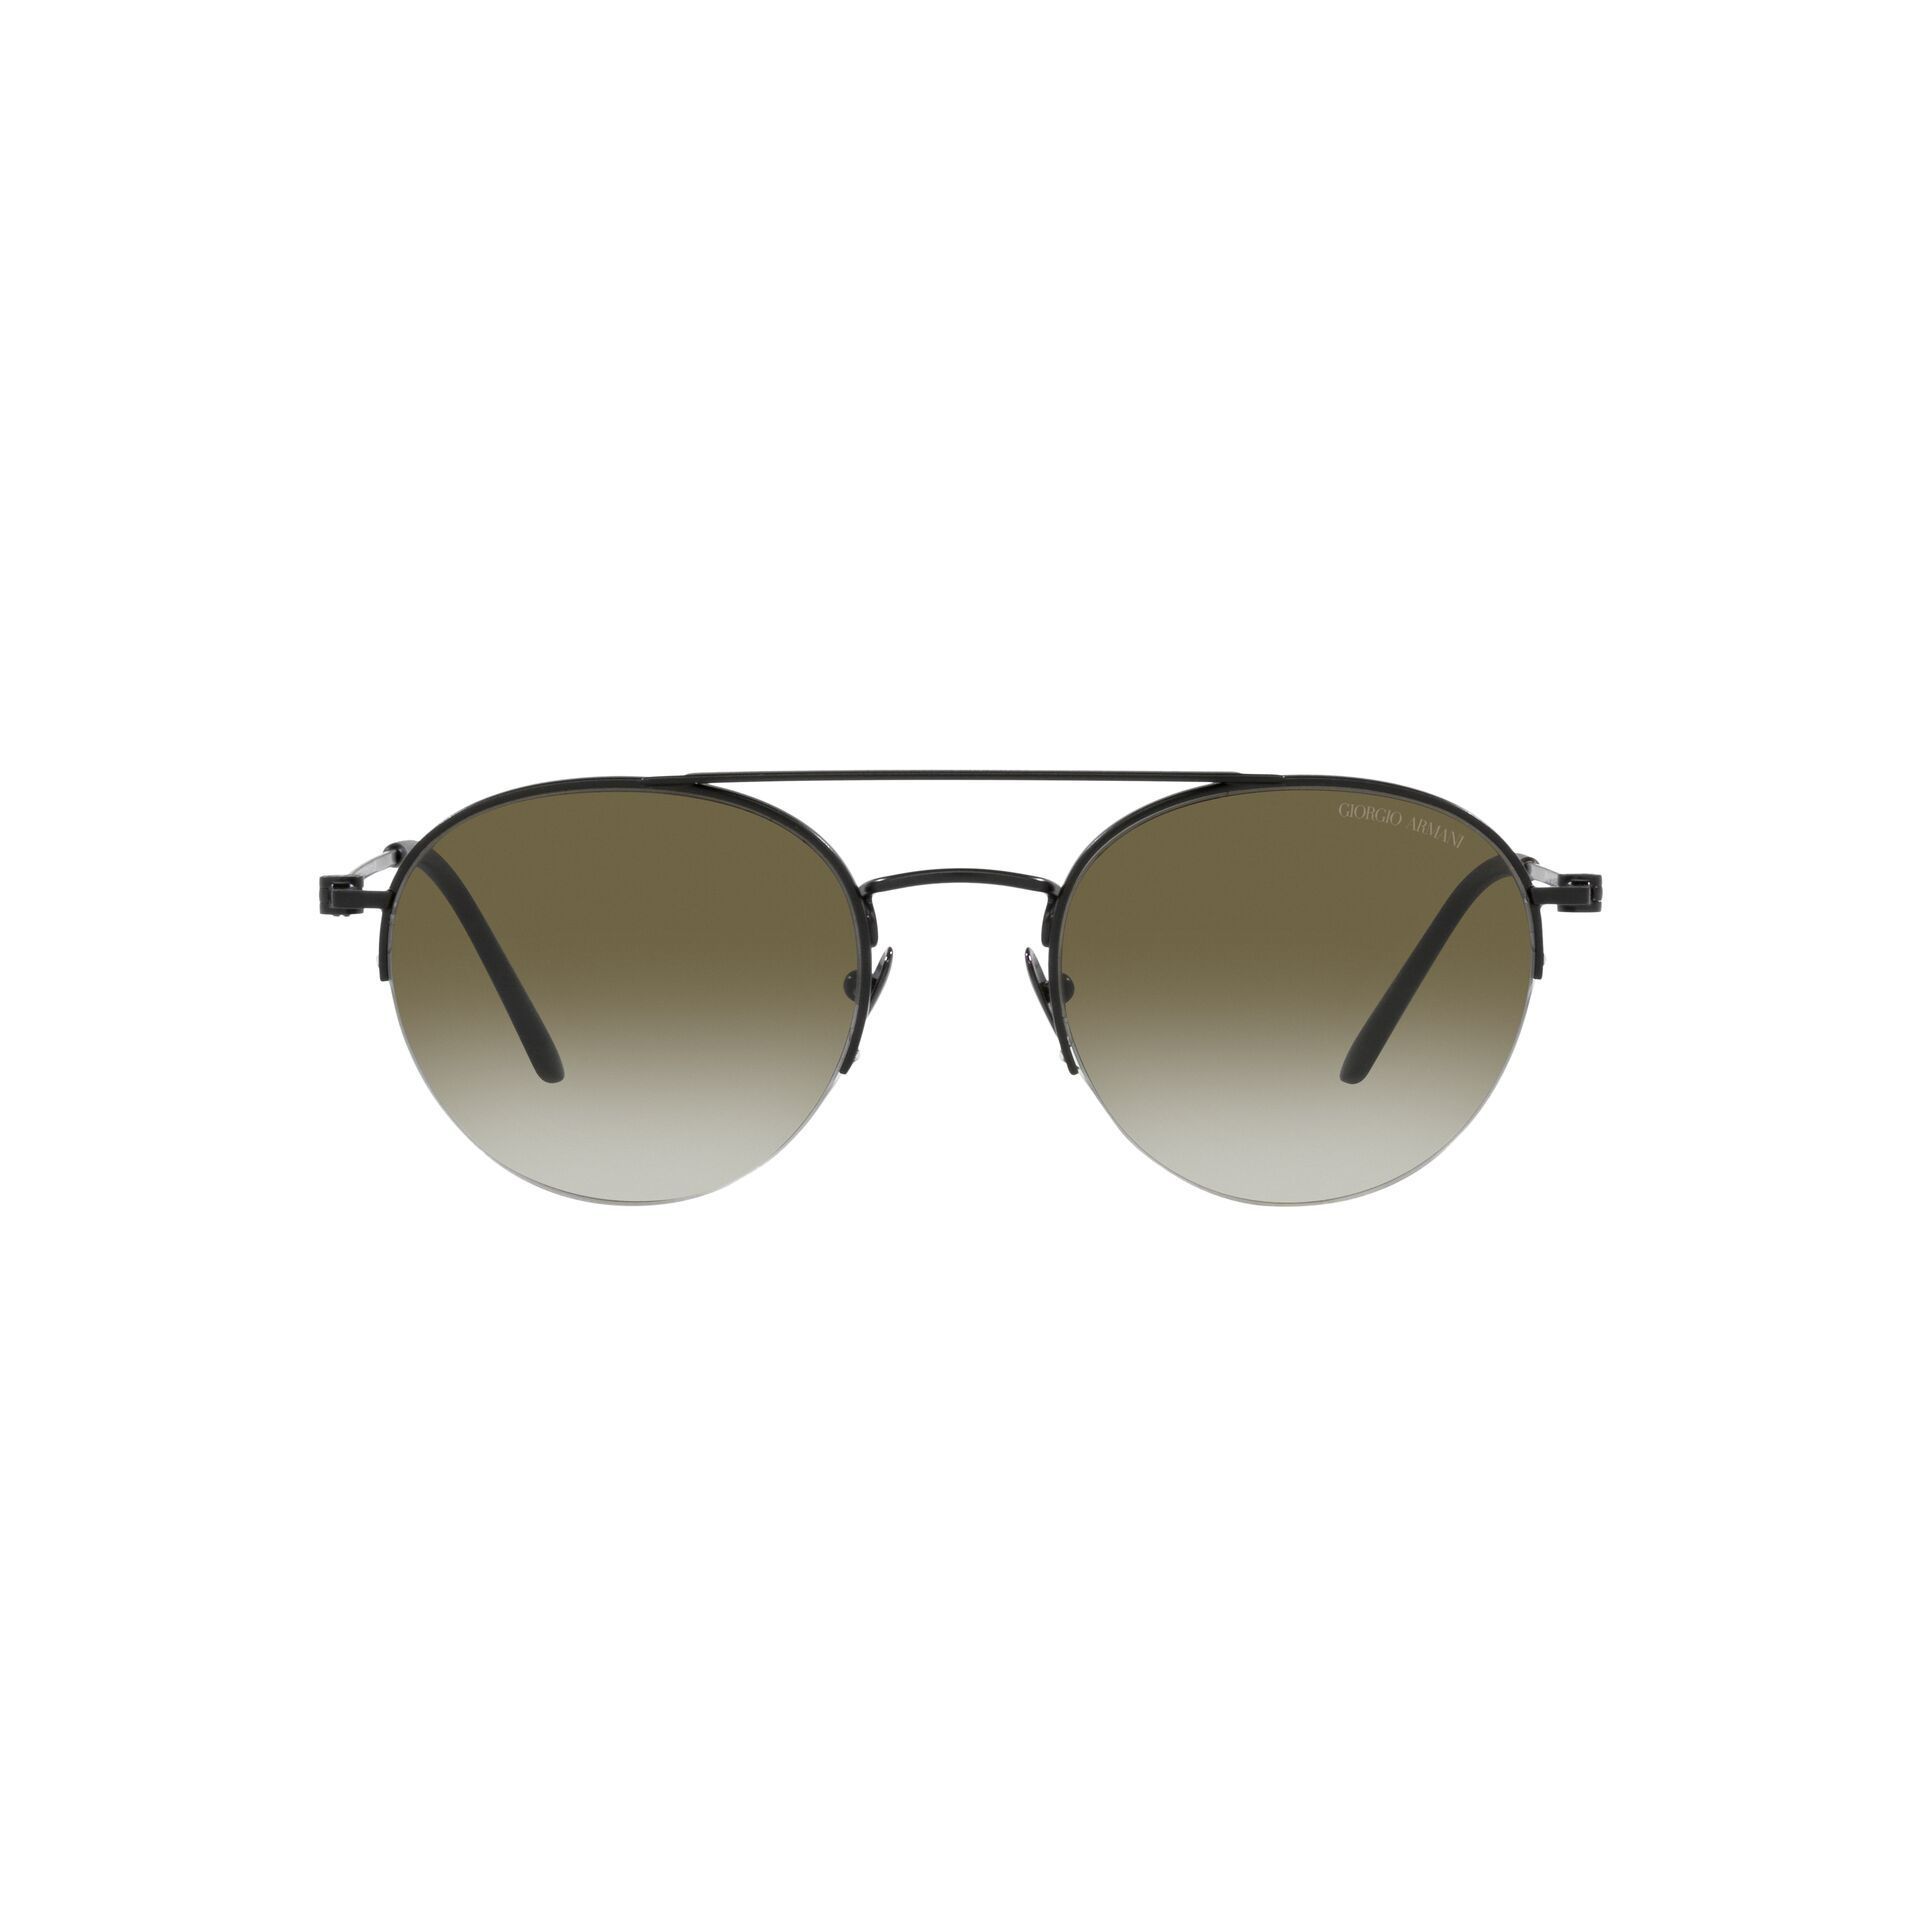 AR6136 Round Sunglasses 30018E - size 52